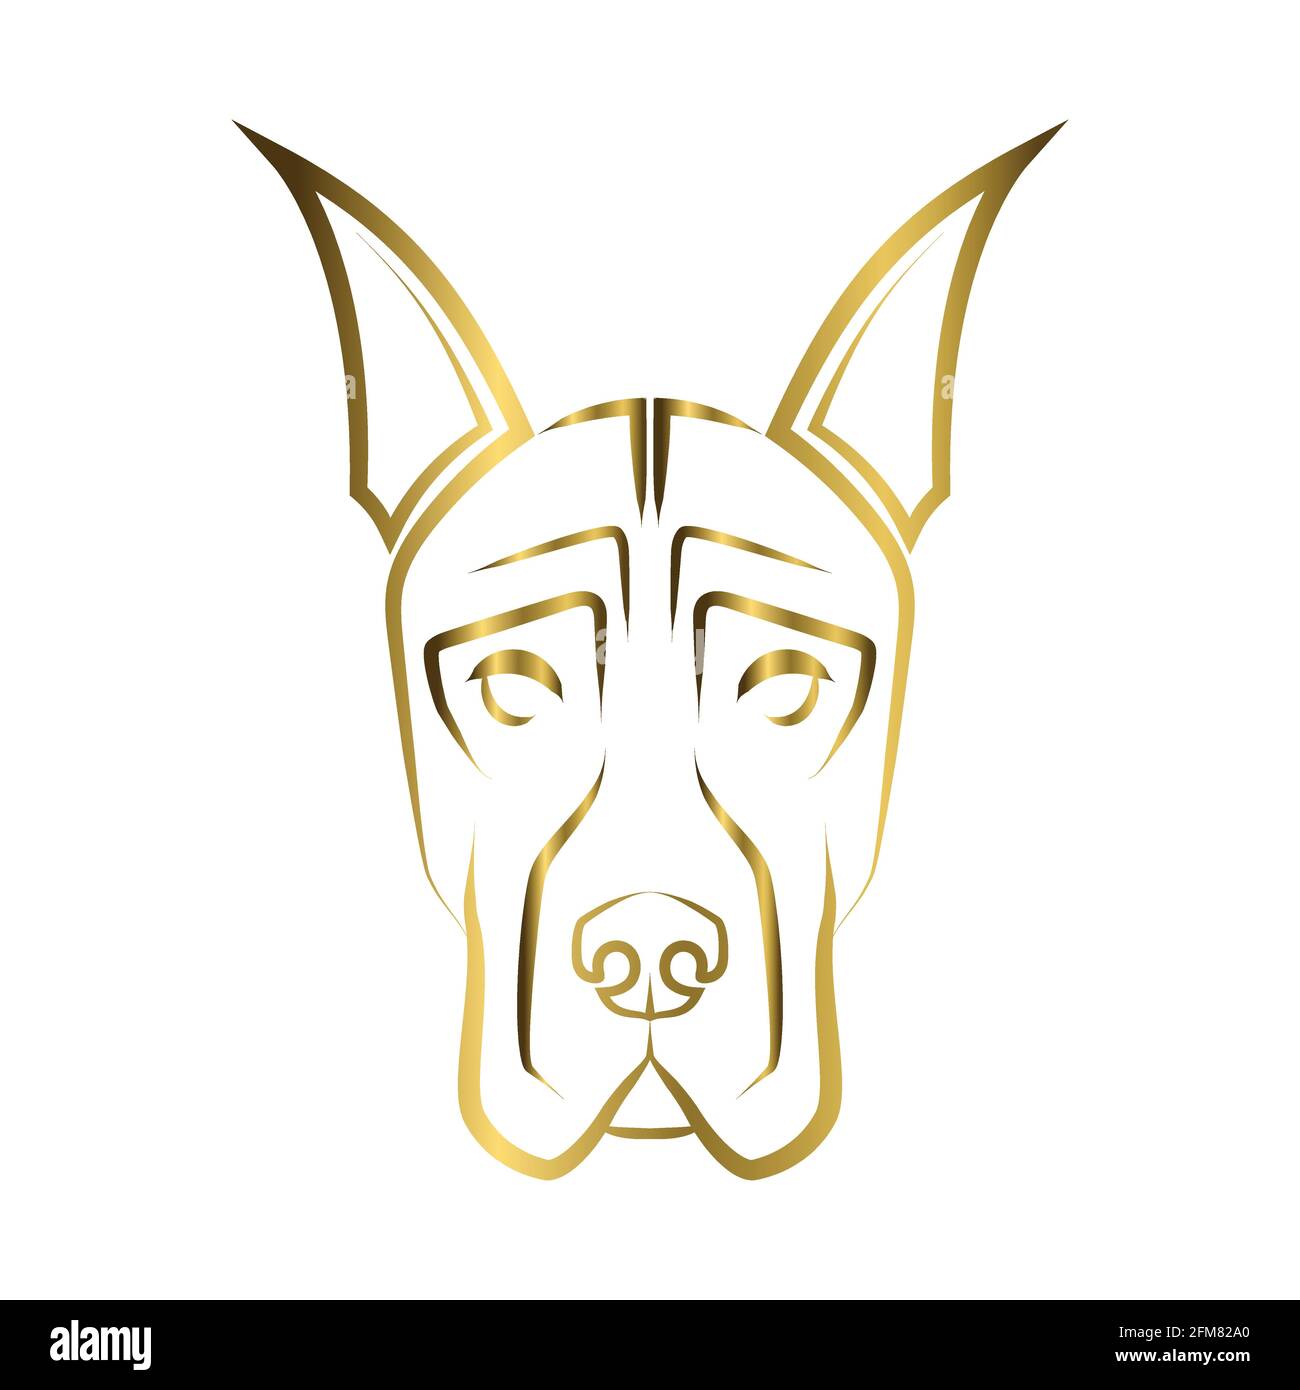 L'art de la ligne d'or de la tête de chien de Great Dane. Bon usage pour symbole, mascotte, icône, avatar, tatouage, T-shirt, logo ou tout autre motif que vous voulez. Illustration de Vecteur